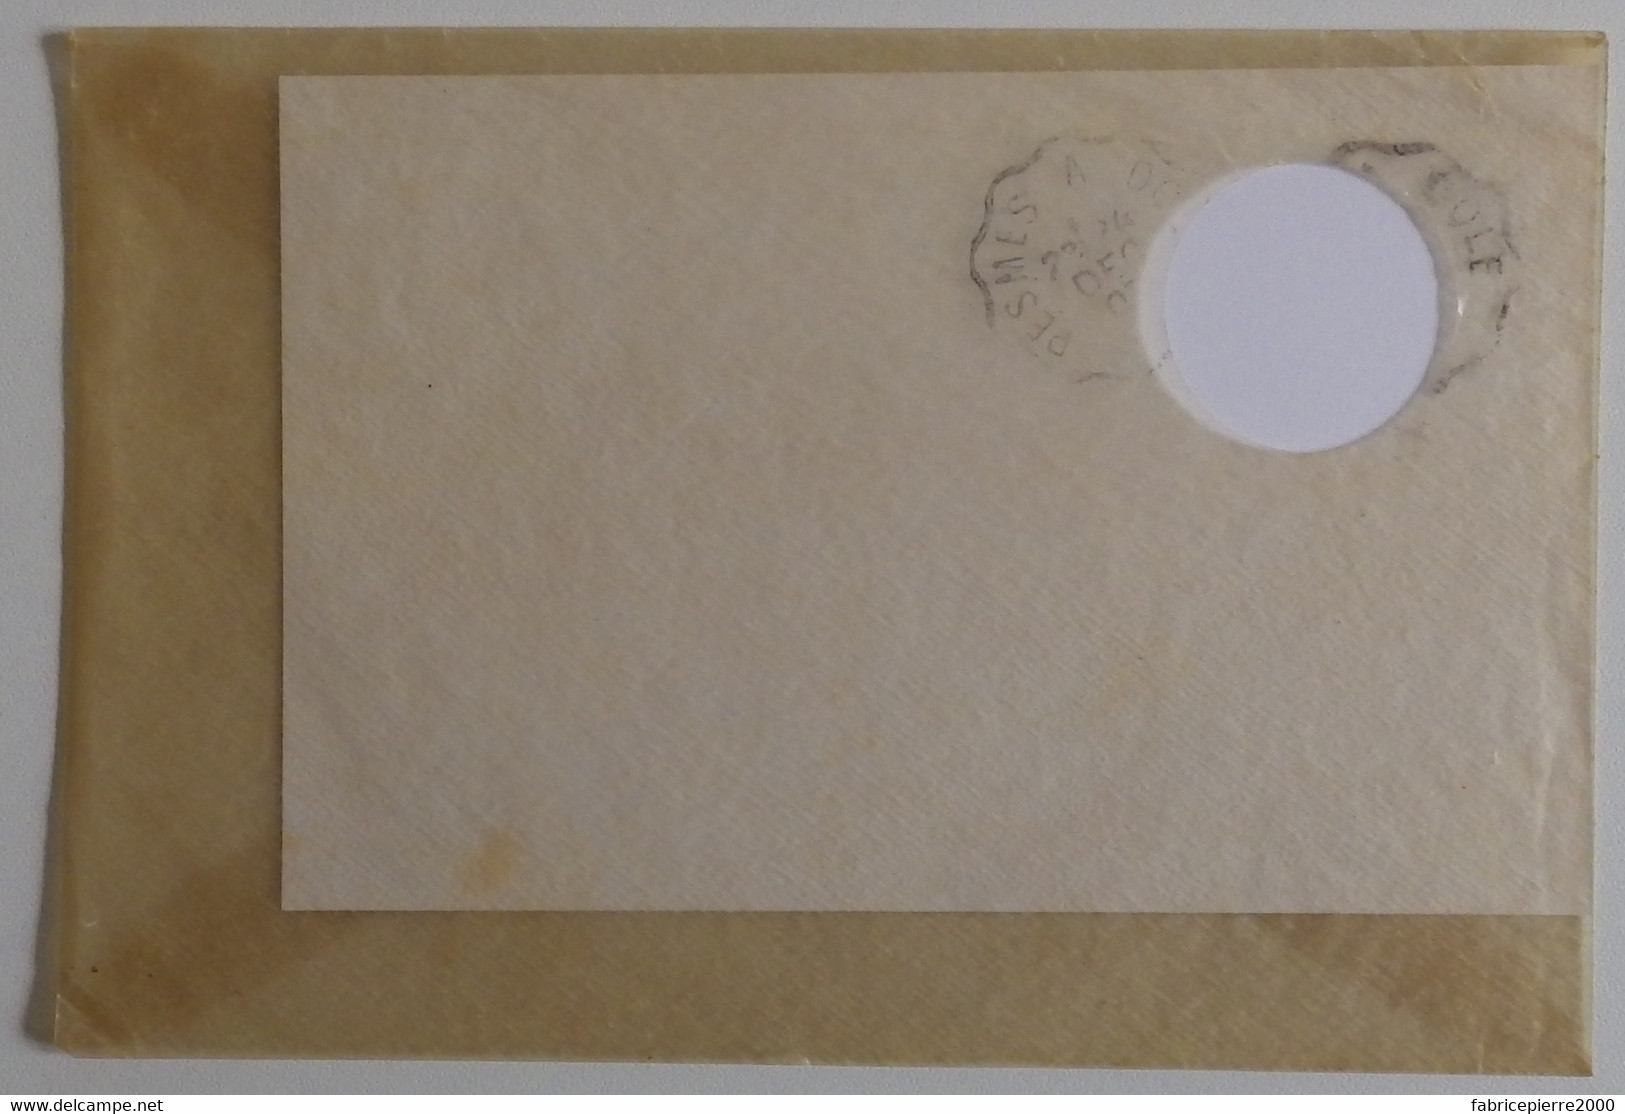 Enveloppe Mica à Fenêtre Pochette à Cartes Postales 1907 TBE Pesmes Dôle - Sleeves